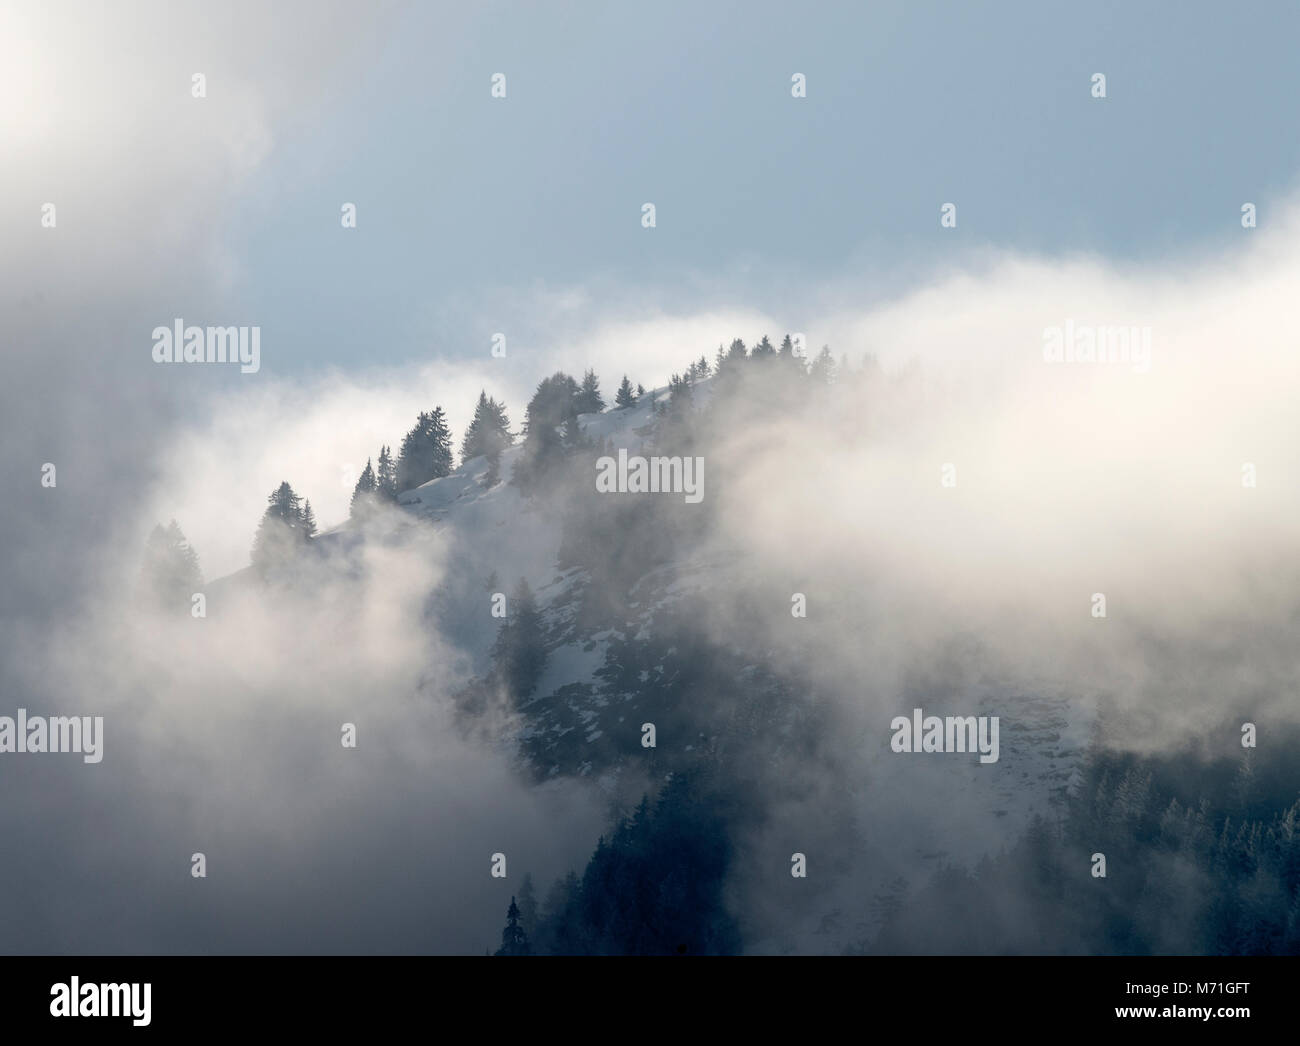 Weiß Wispy Wolken bedecken den Berg, in einem Pinienwald, geschmückt mit blauen Himmel in der Nähe von Essert Romand Morzine Französische Alpen Haute Savoie Frankreich Stockfoto